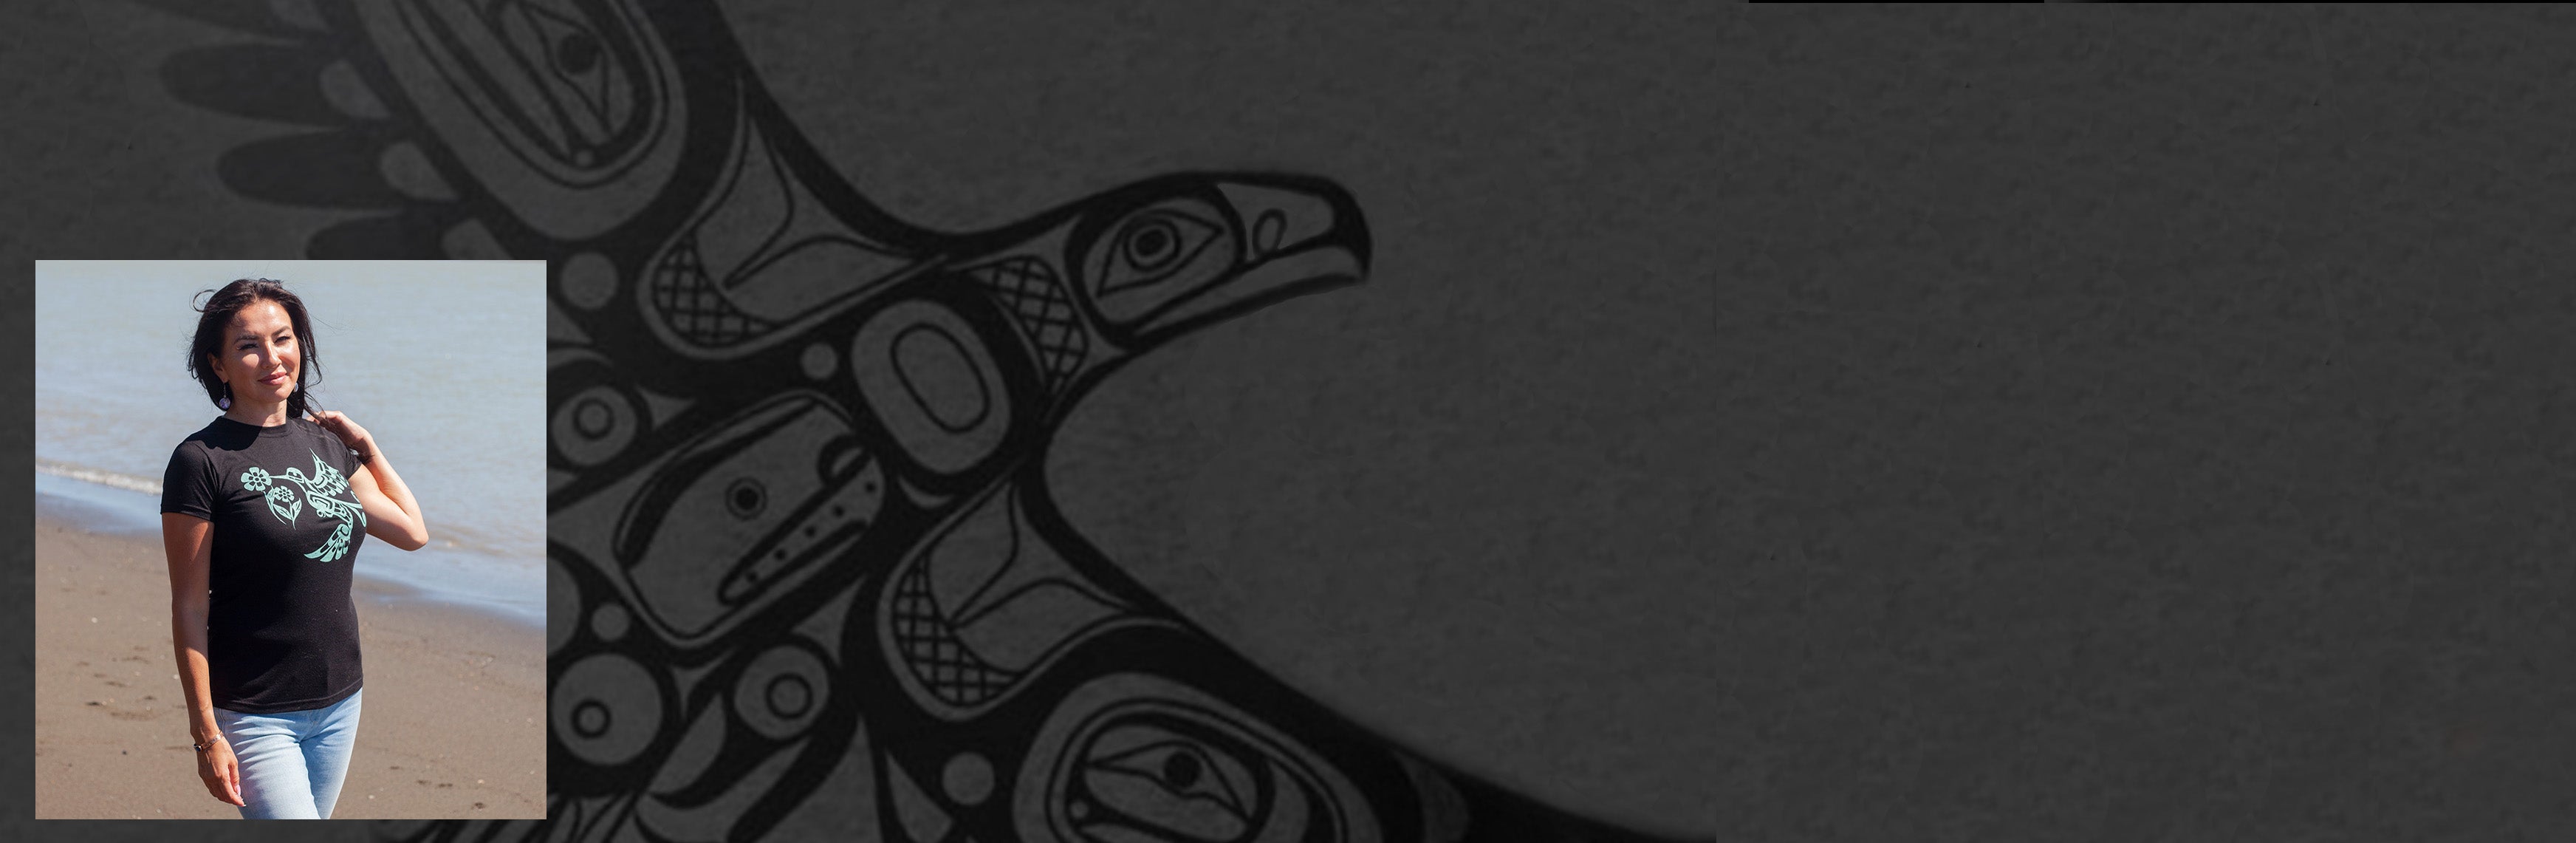 T-shirts et coton ouatés imprimés d'art autochtone canadien - Boutique Equinoxe